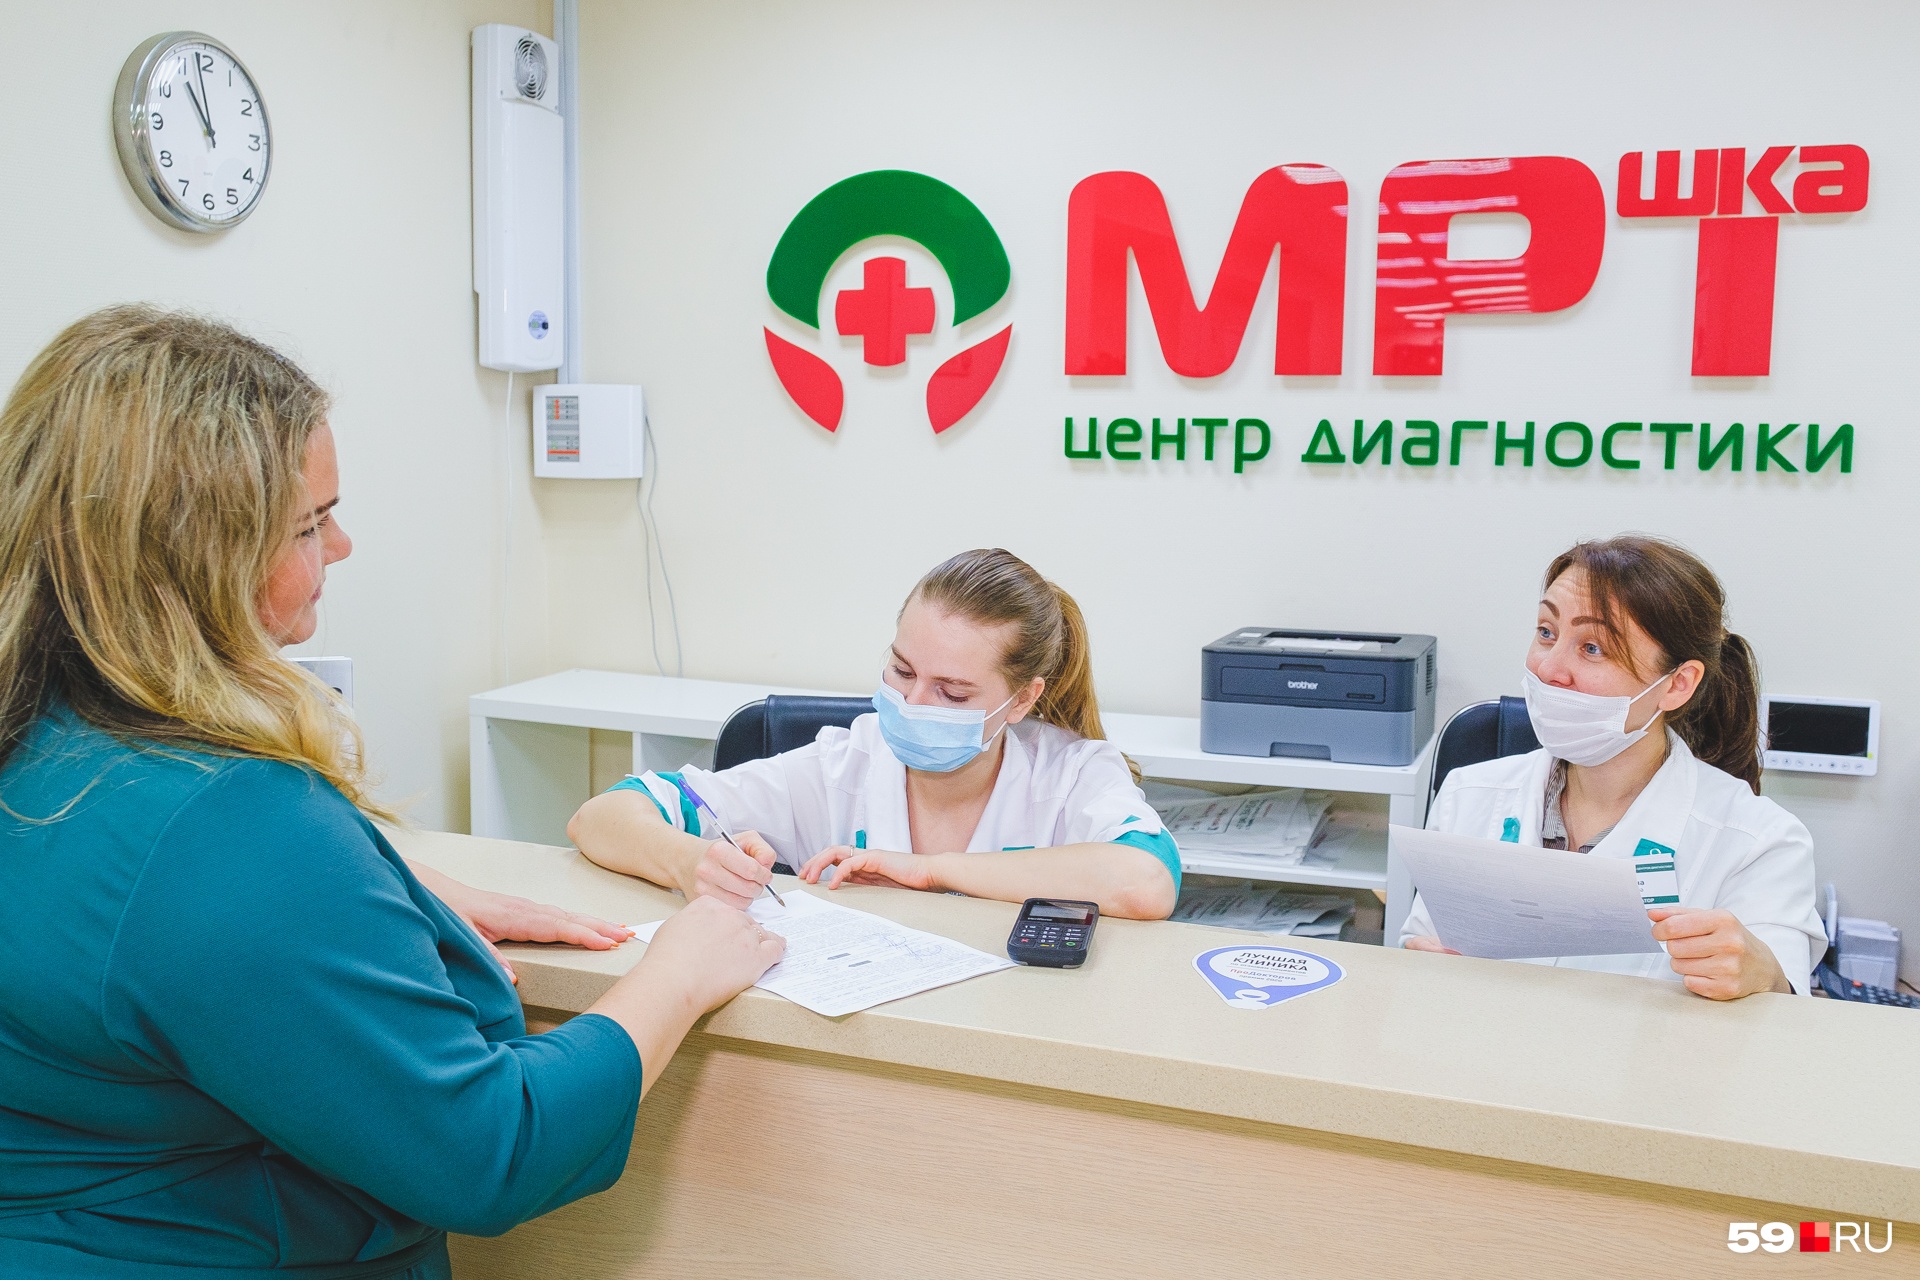 Сейчас «МРТШКА» работает в 8 городах России